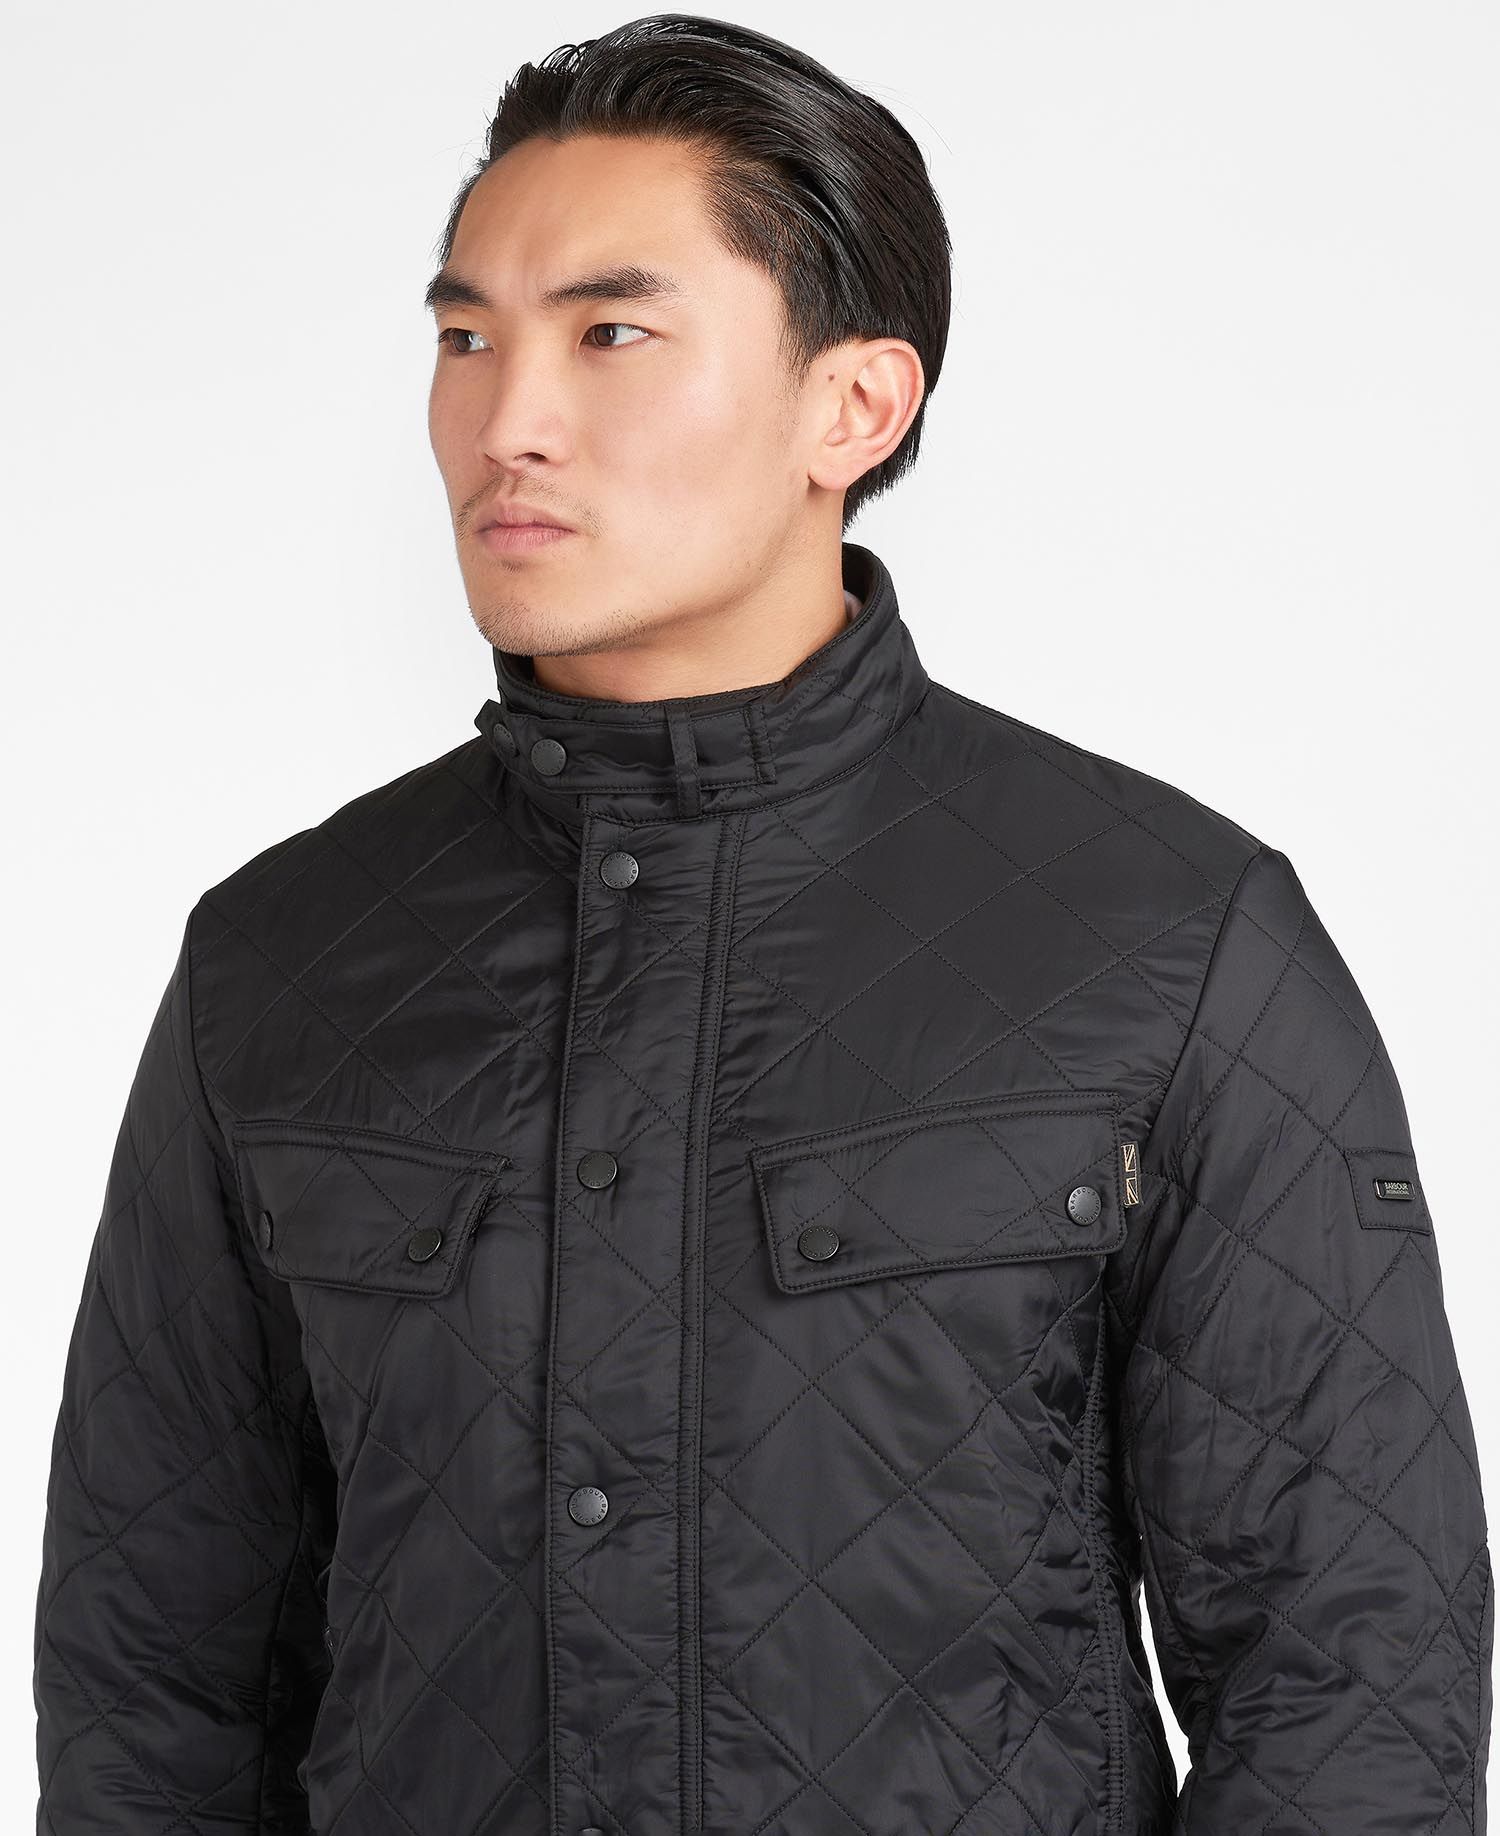 Winkelcentrum veteraan Winkelier B.Intl Ariel Polarquilt Jacket in Black | Barbour